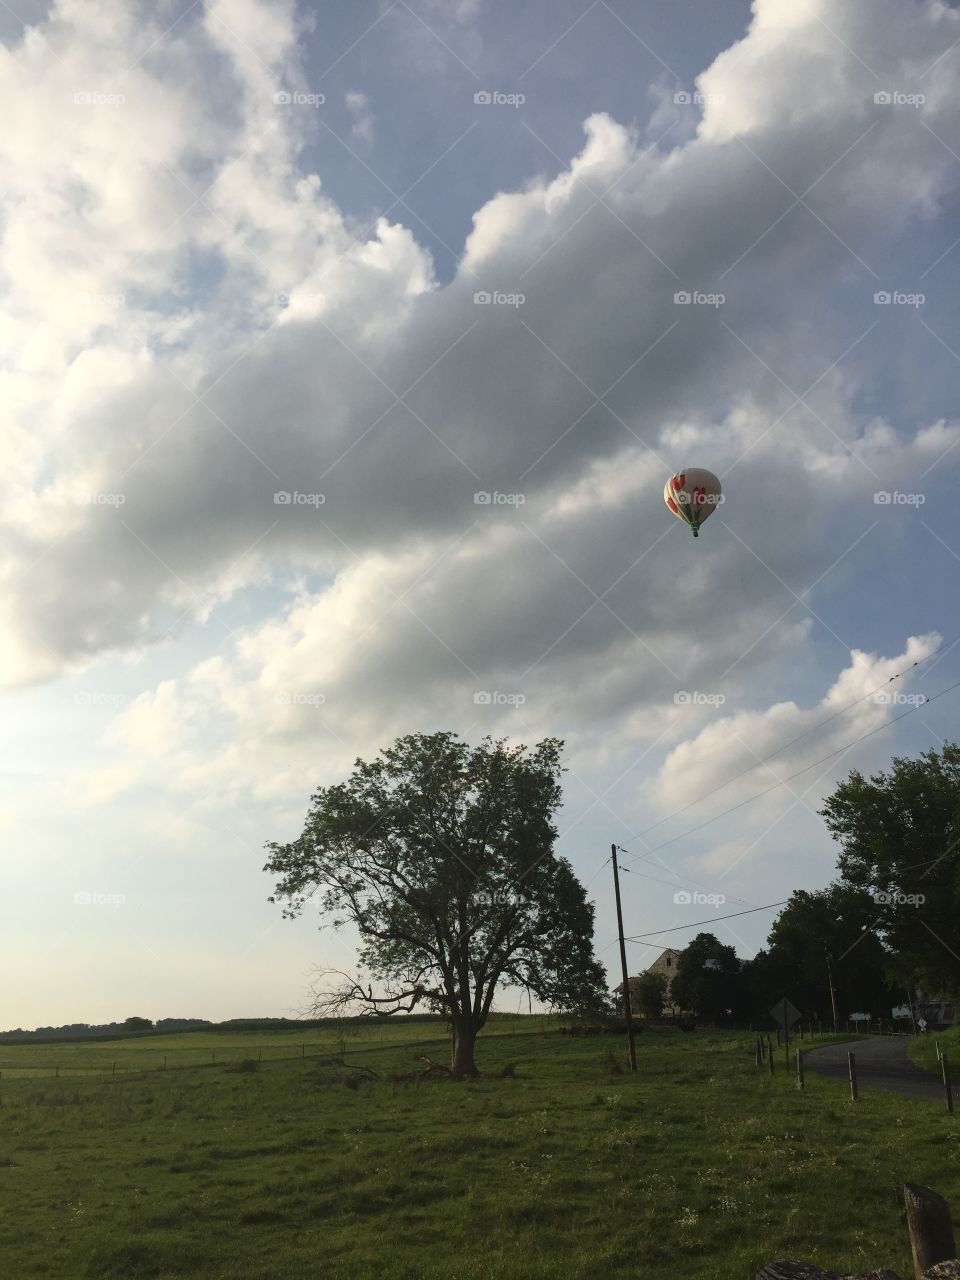 Hot air balloon over Pennsylvania countryside. 